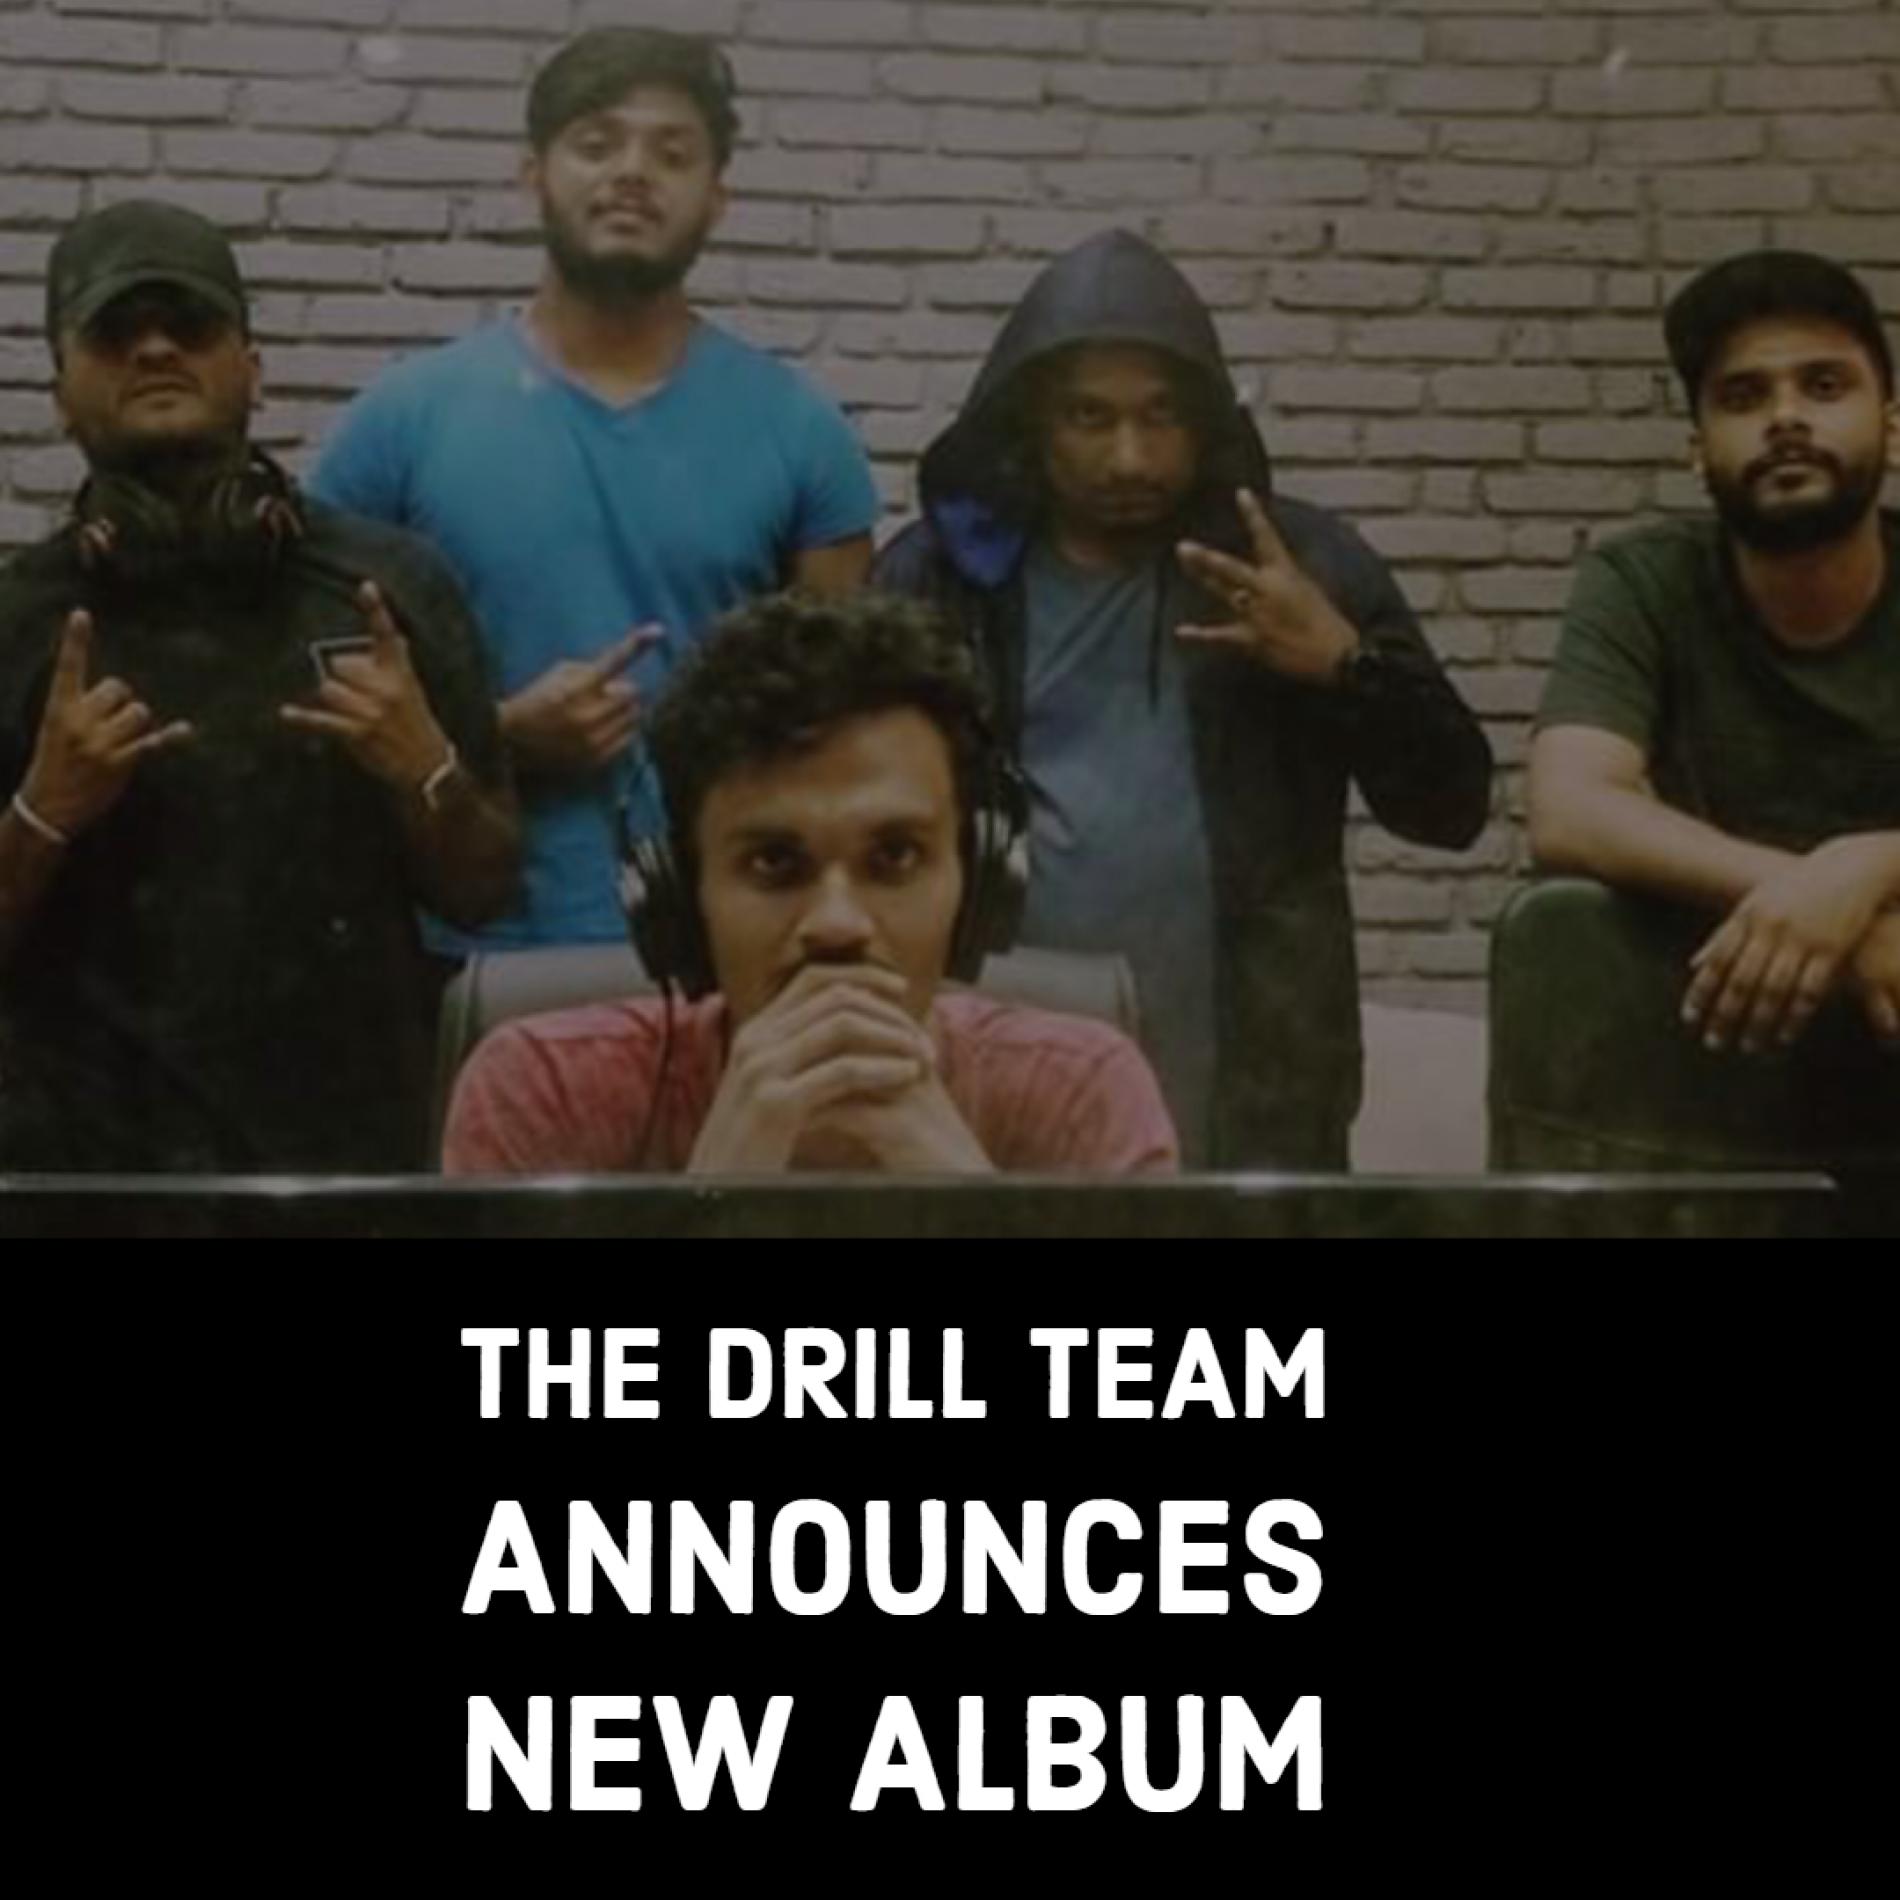 The Drill Team Announces An Album!